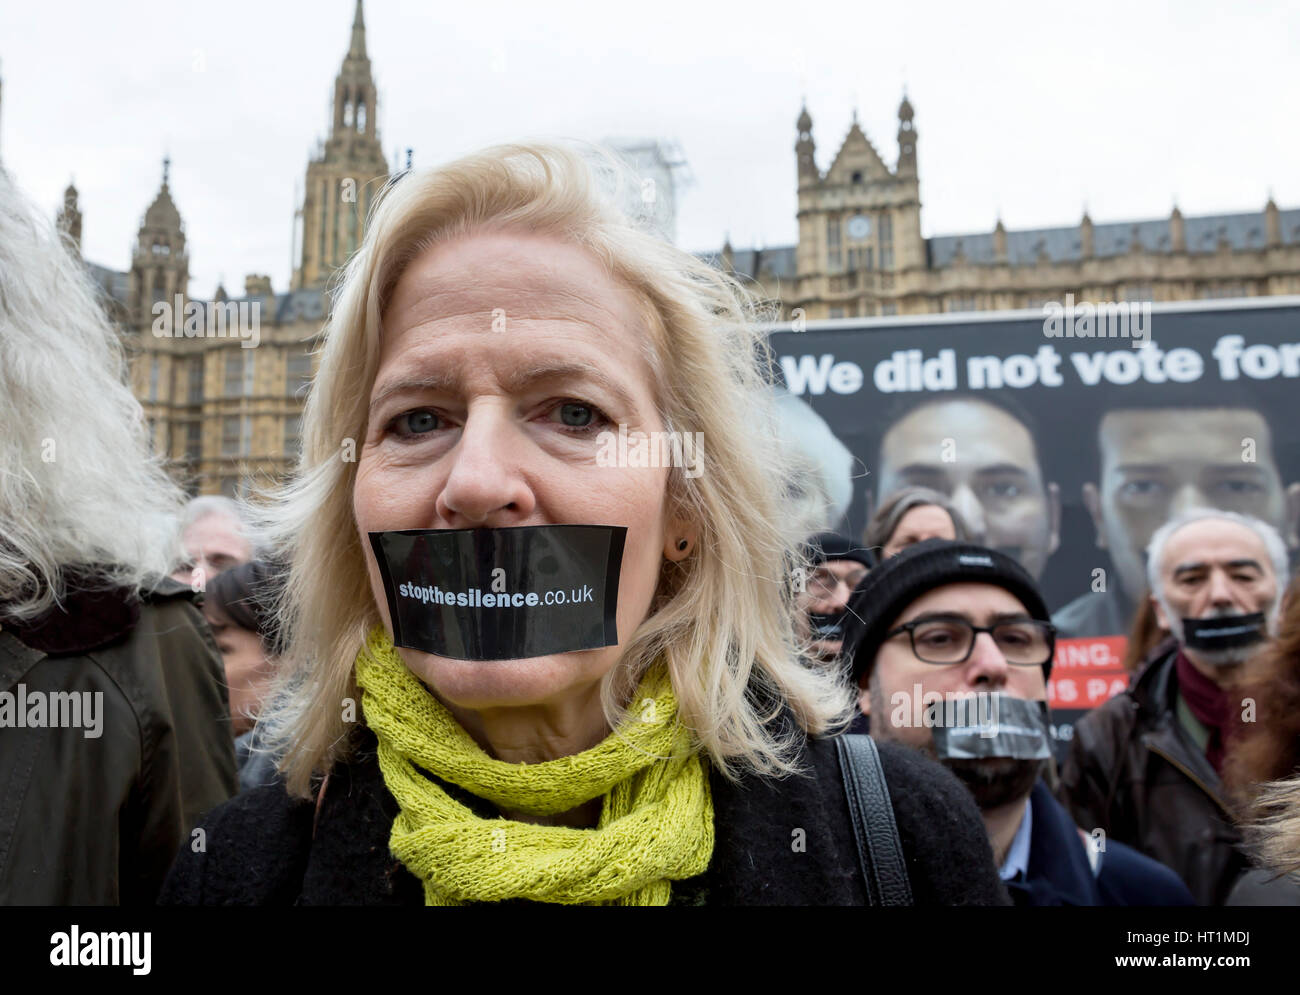 Arrestare il silenzio. La campagna è stata lanciata a Londra a intervenire per le persone le cui voci vogliono essere ascoltati in Brexit negoziati. Foto Stock